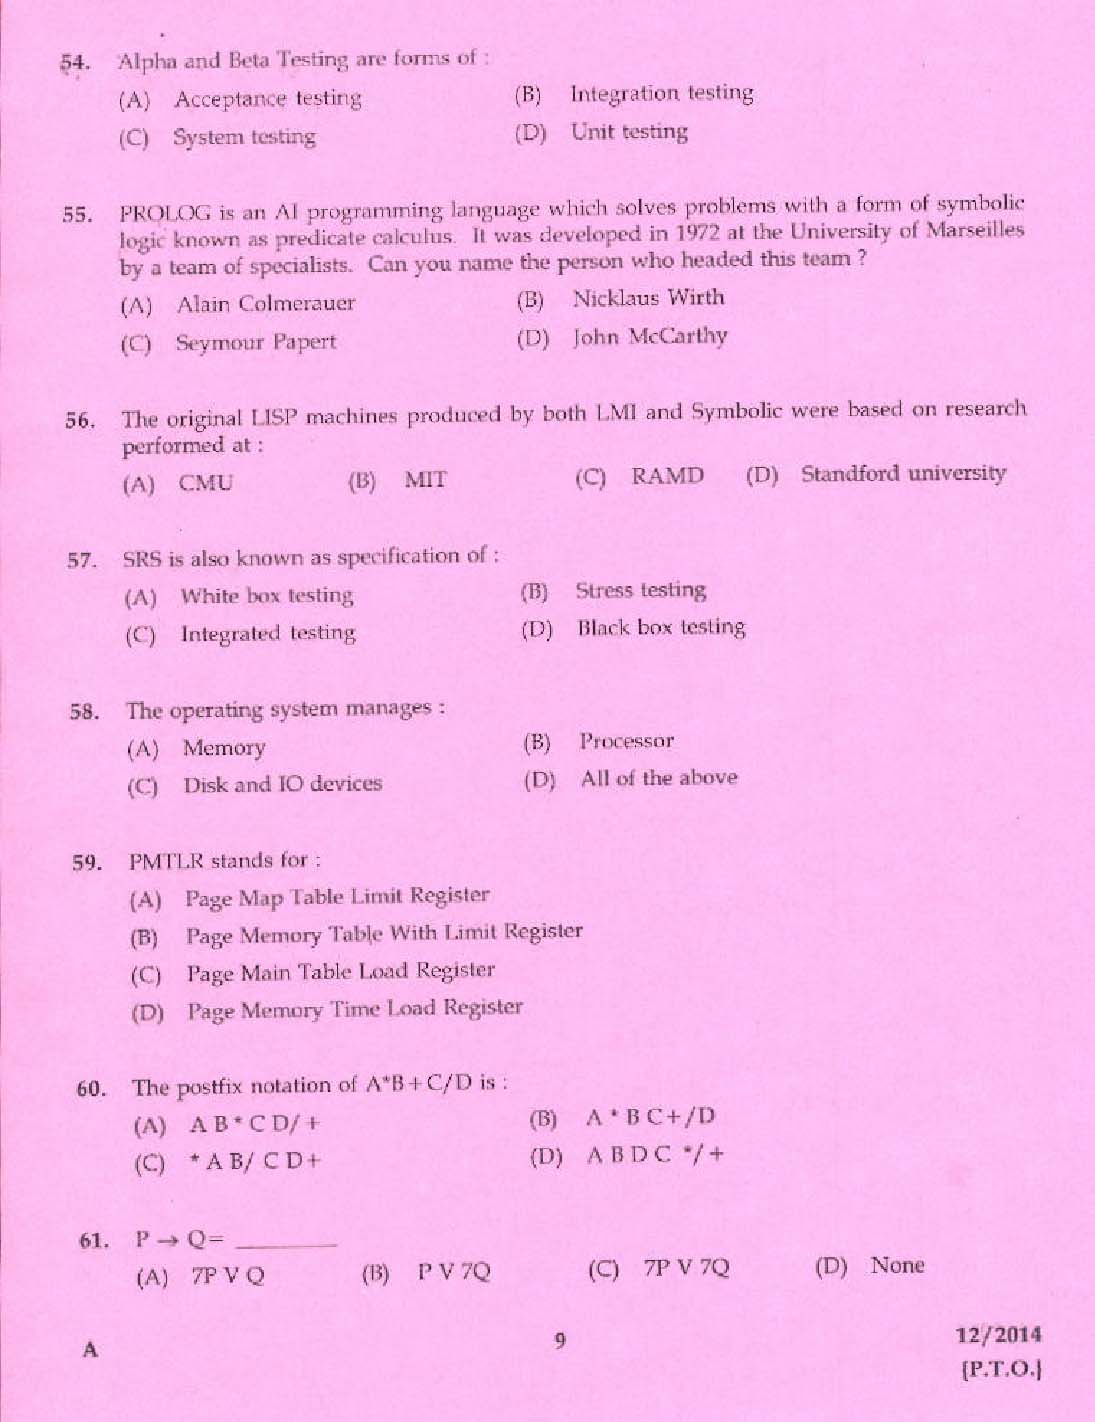 KPSC Vocational Teacher Exam 2014 Code 122014 7